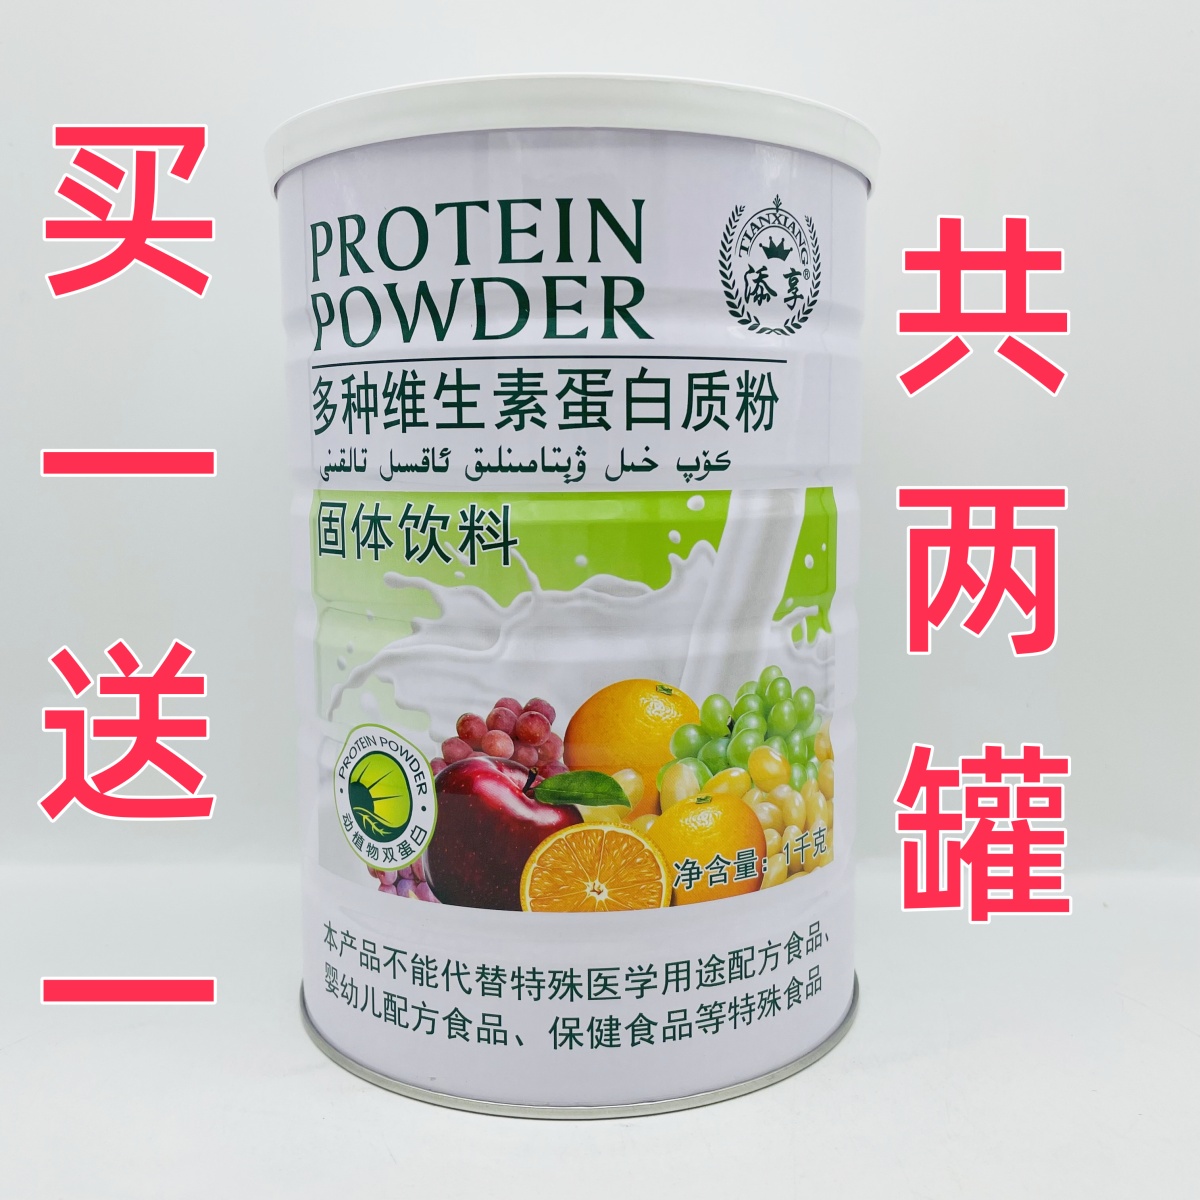 【买1罐送1罐+赠礼品】添享多种维生素蛋白质粉  1000g